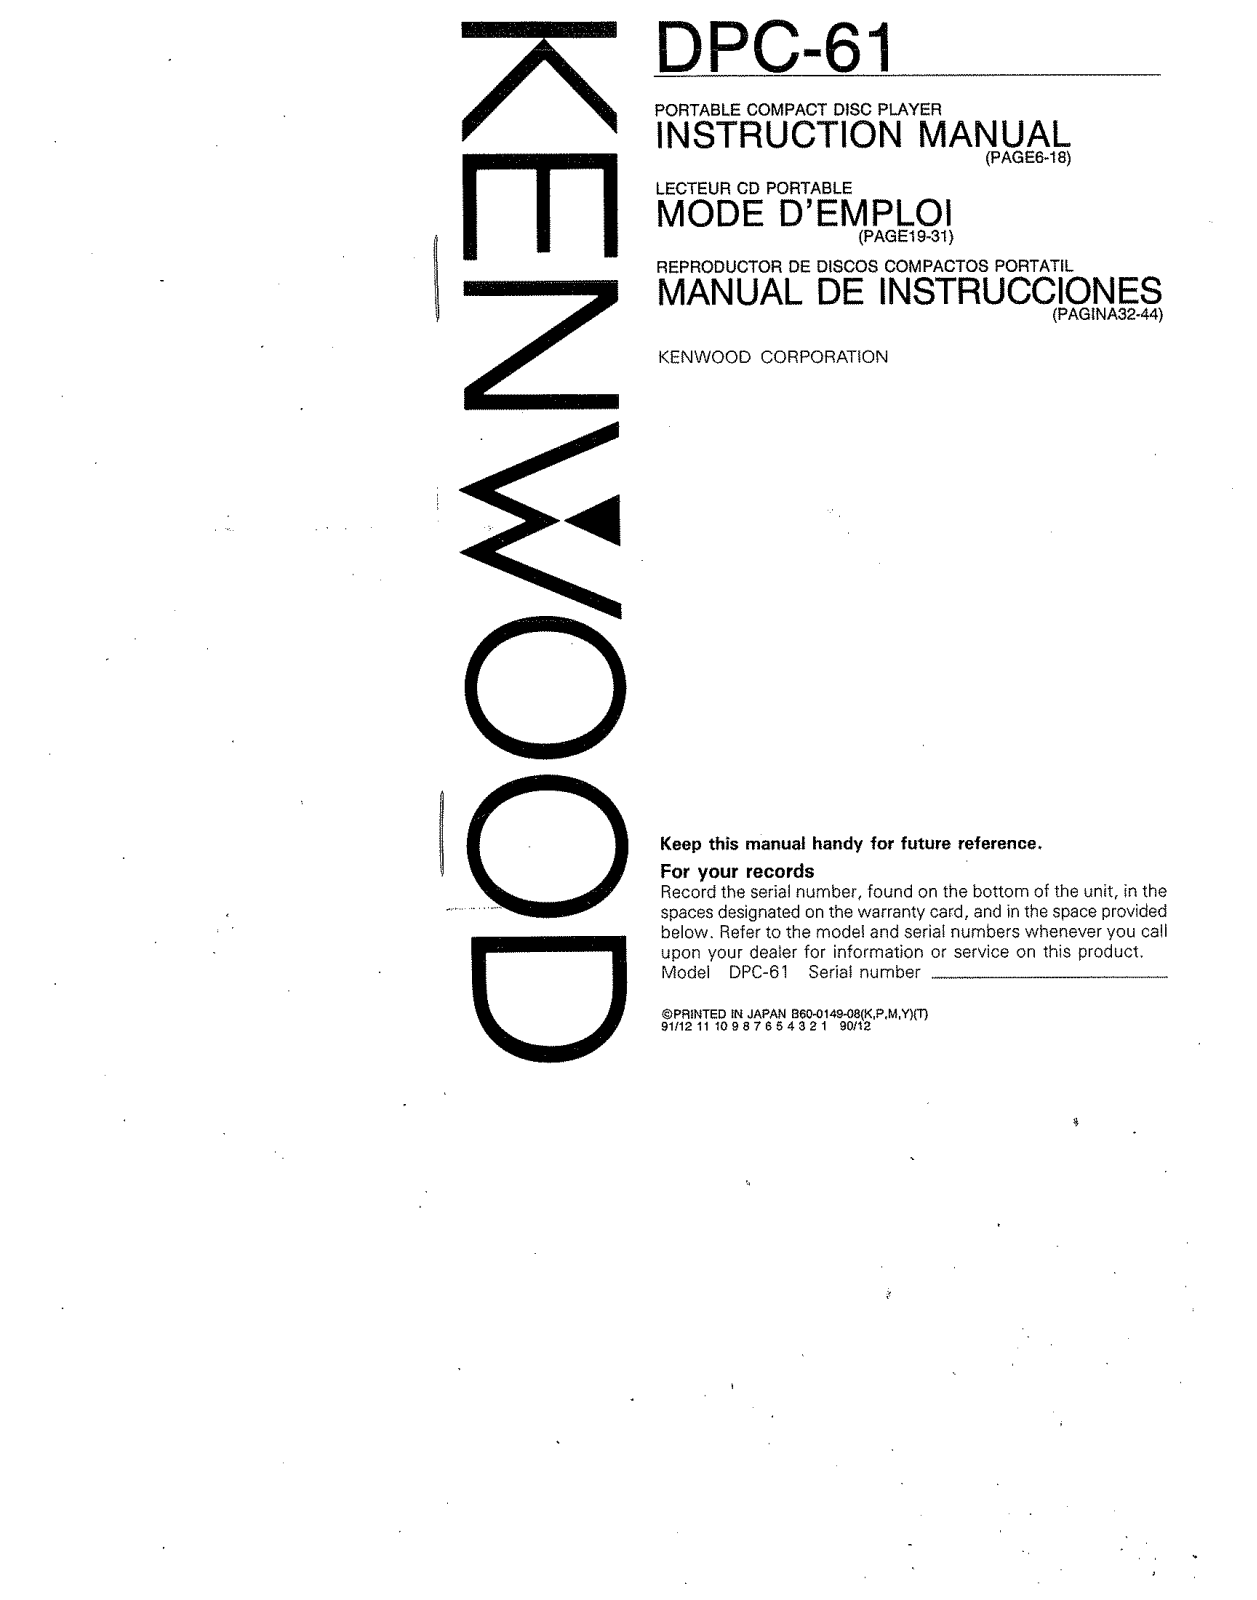 Kenwood DPC-61 Owner's Manual